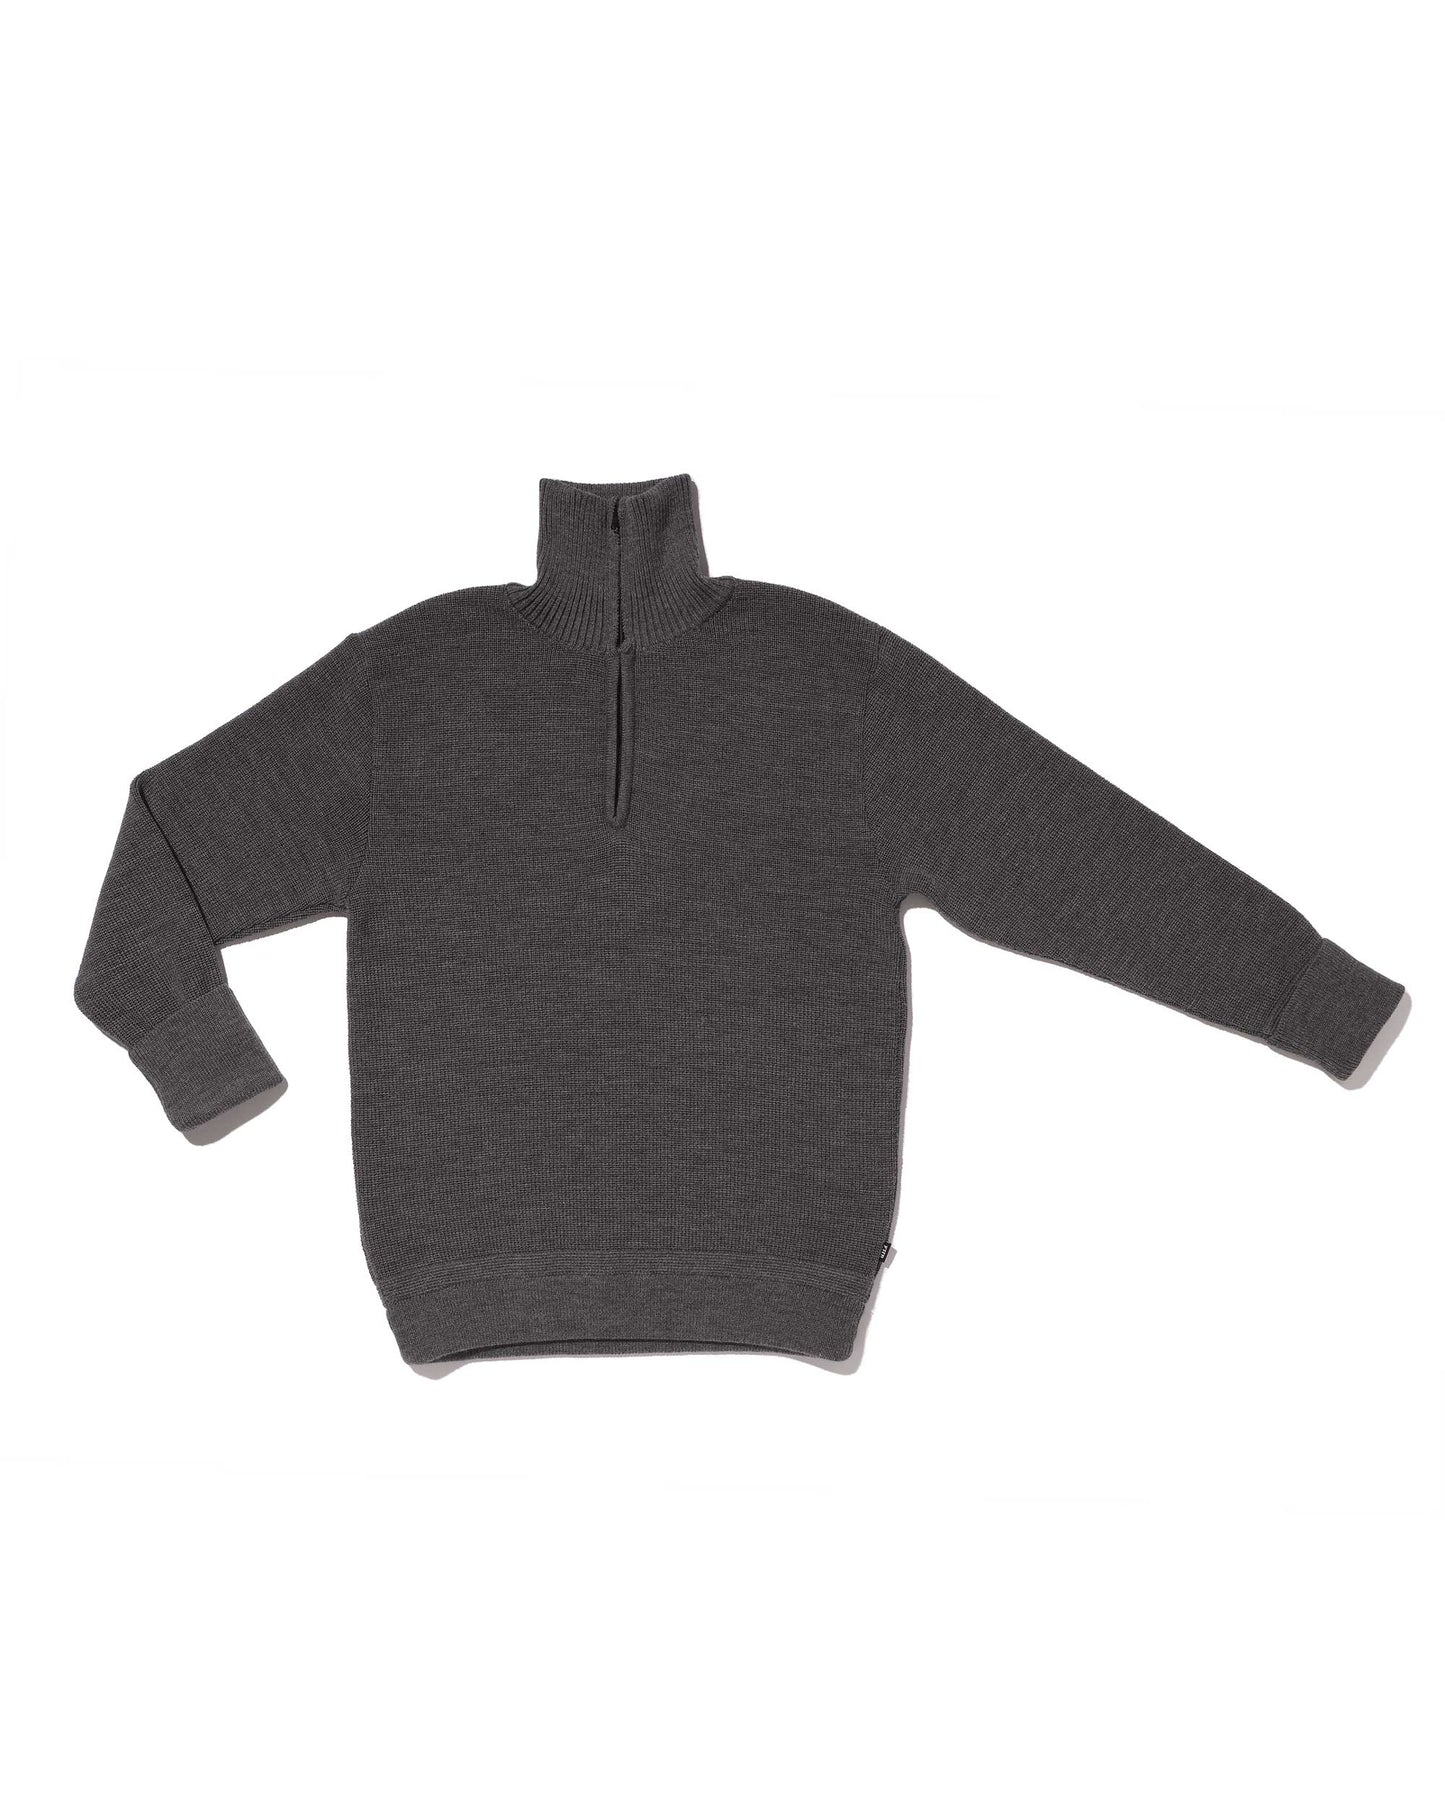 Gray 80% wool trucker sweater